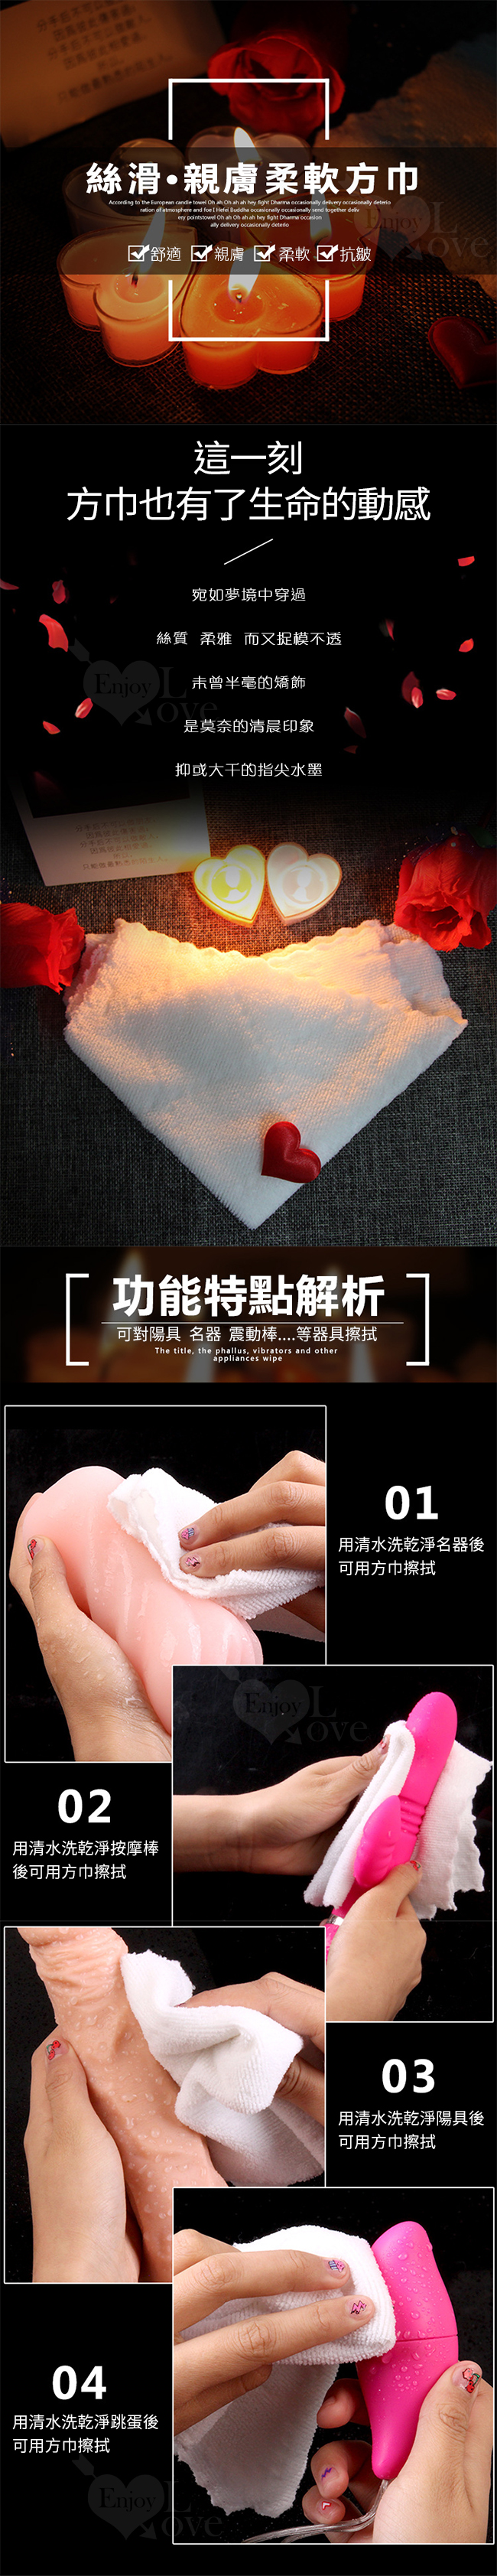 清潔擦拭方巾 - 通用於男女情趣用品